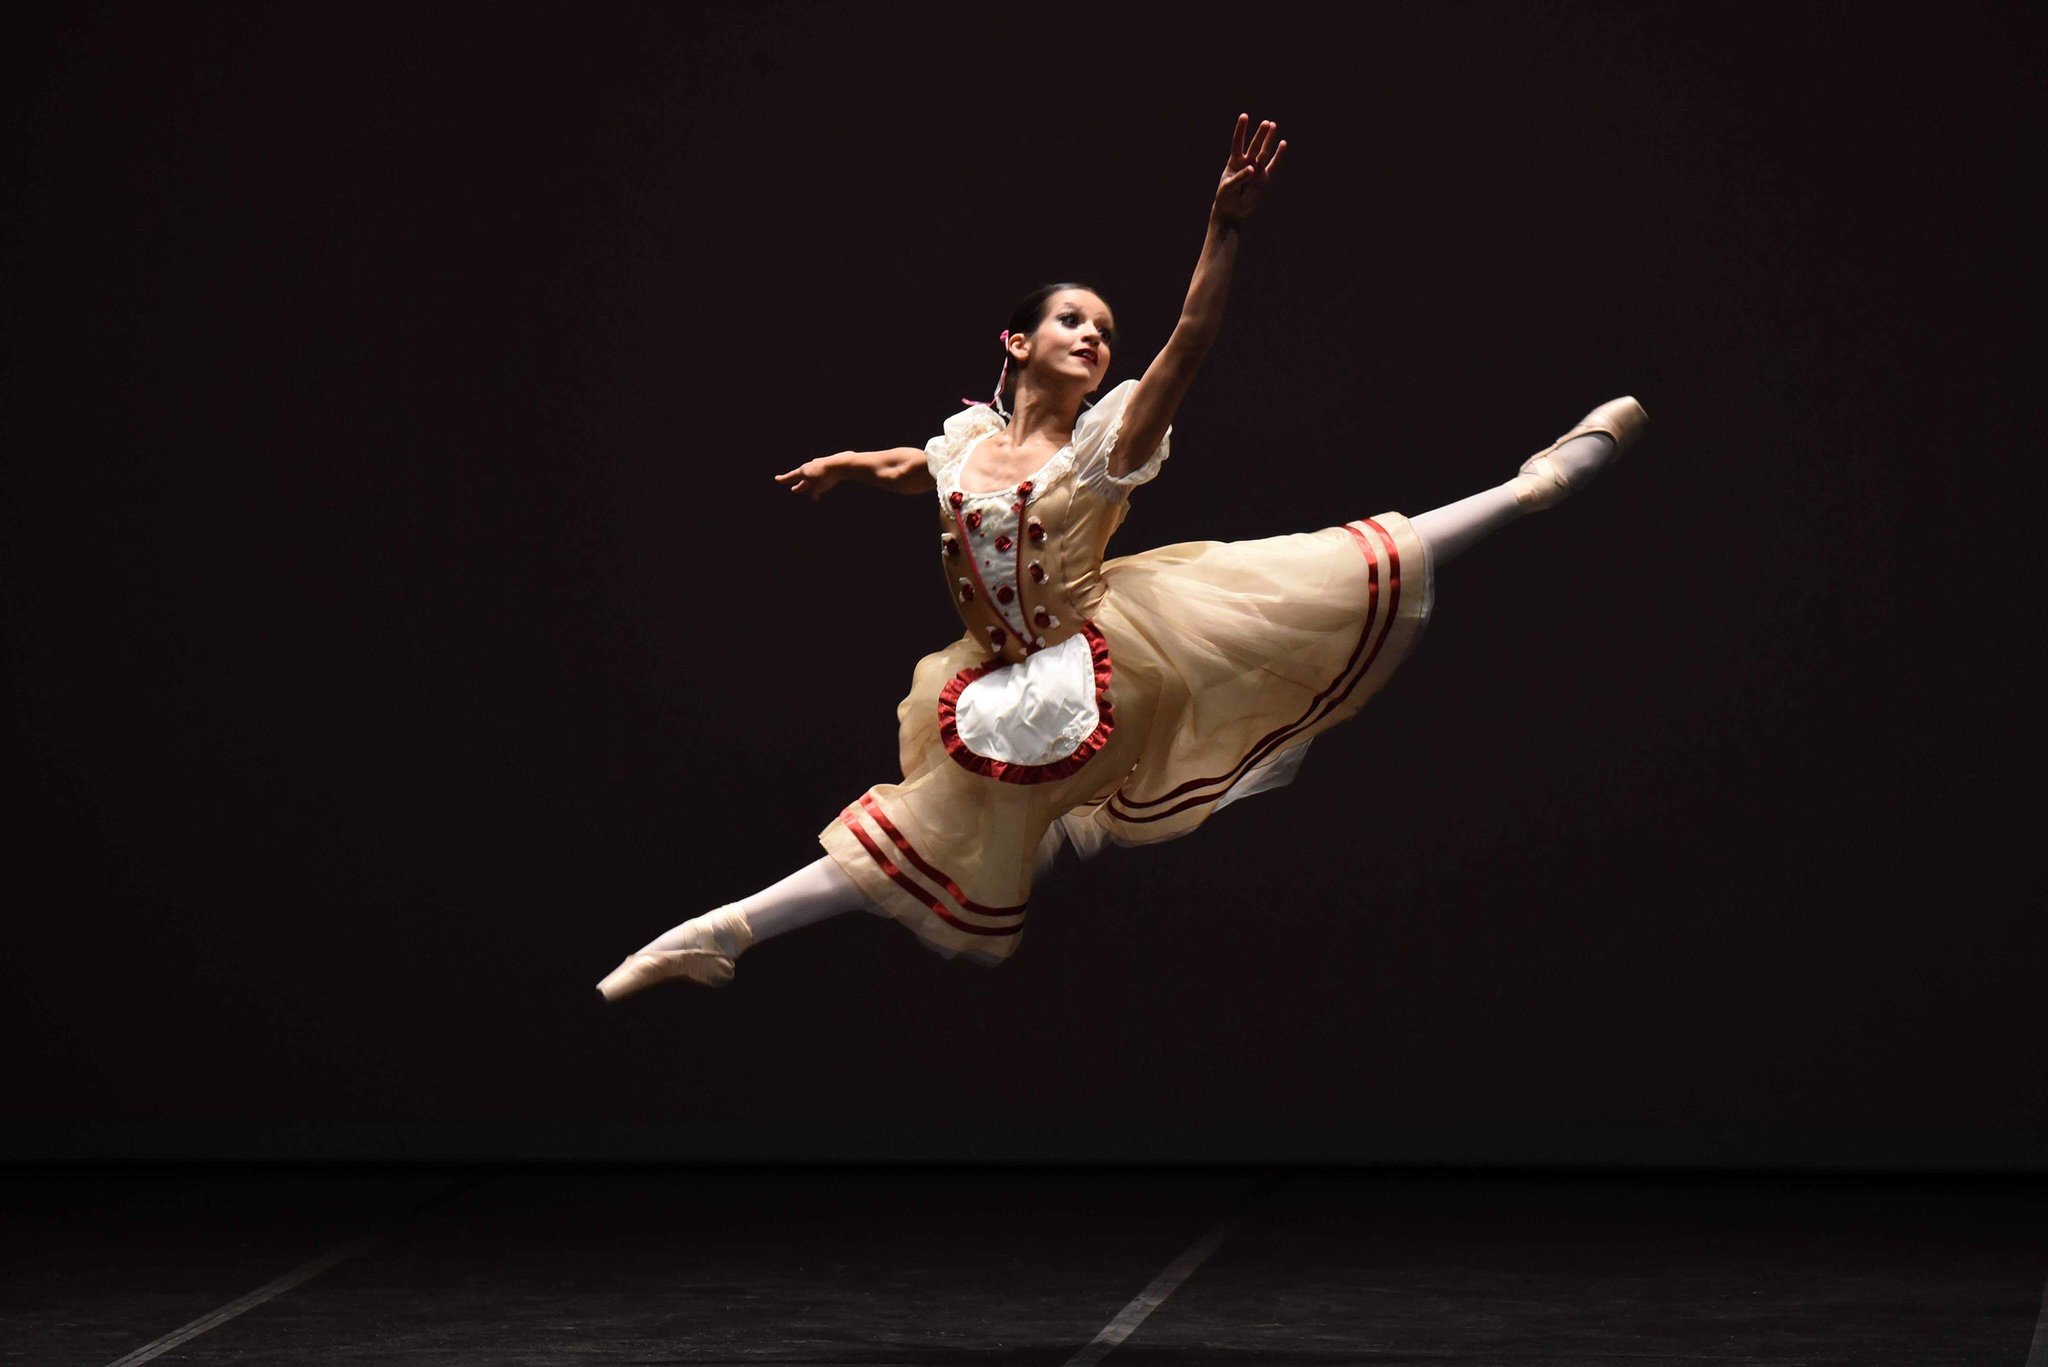 "Sou bailarina graças à minha avó que me inscreveu no ballet aos 4 anos", Carolina Costa Carol-fantastica